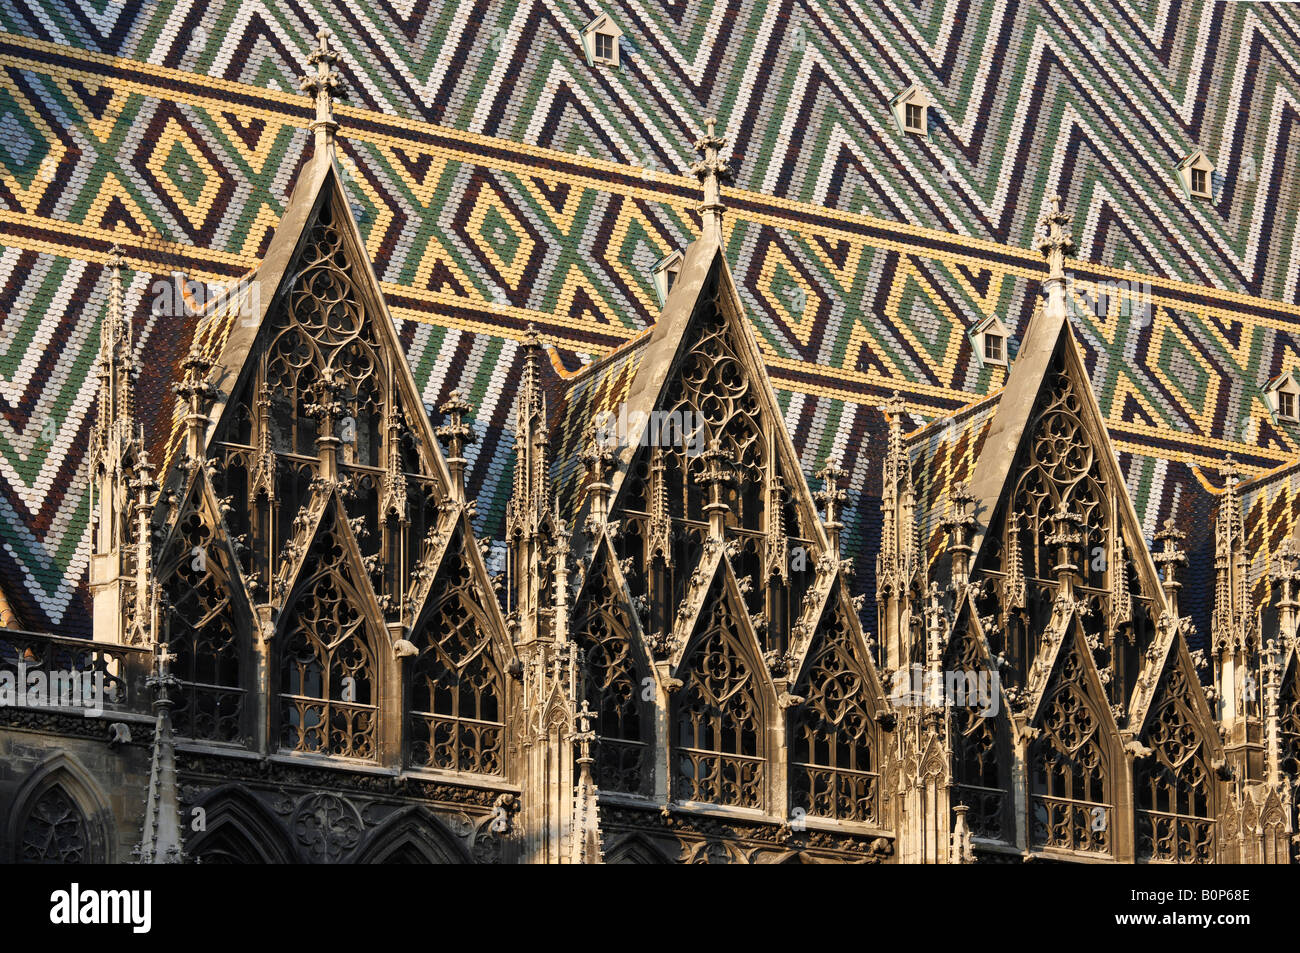 Wien, Stephansdom, Wimperge und Farbige Dachziegel auf der Südseite Stock Photo